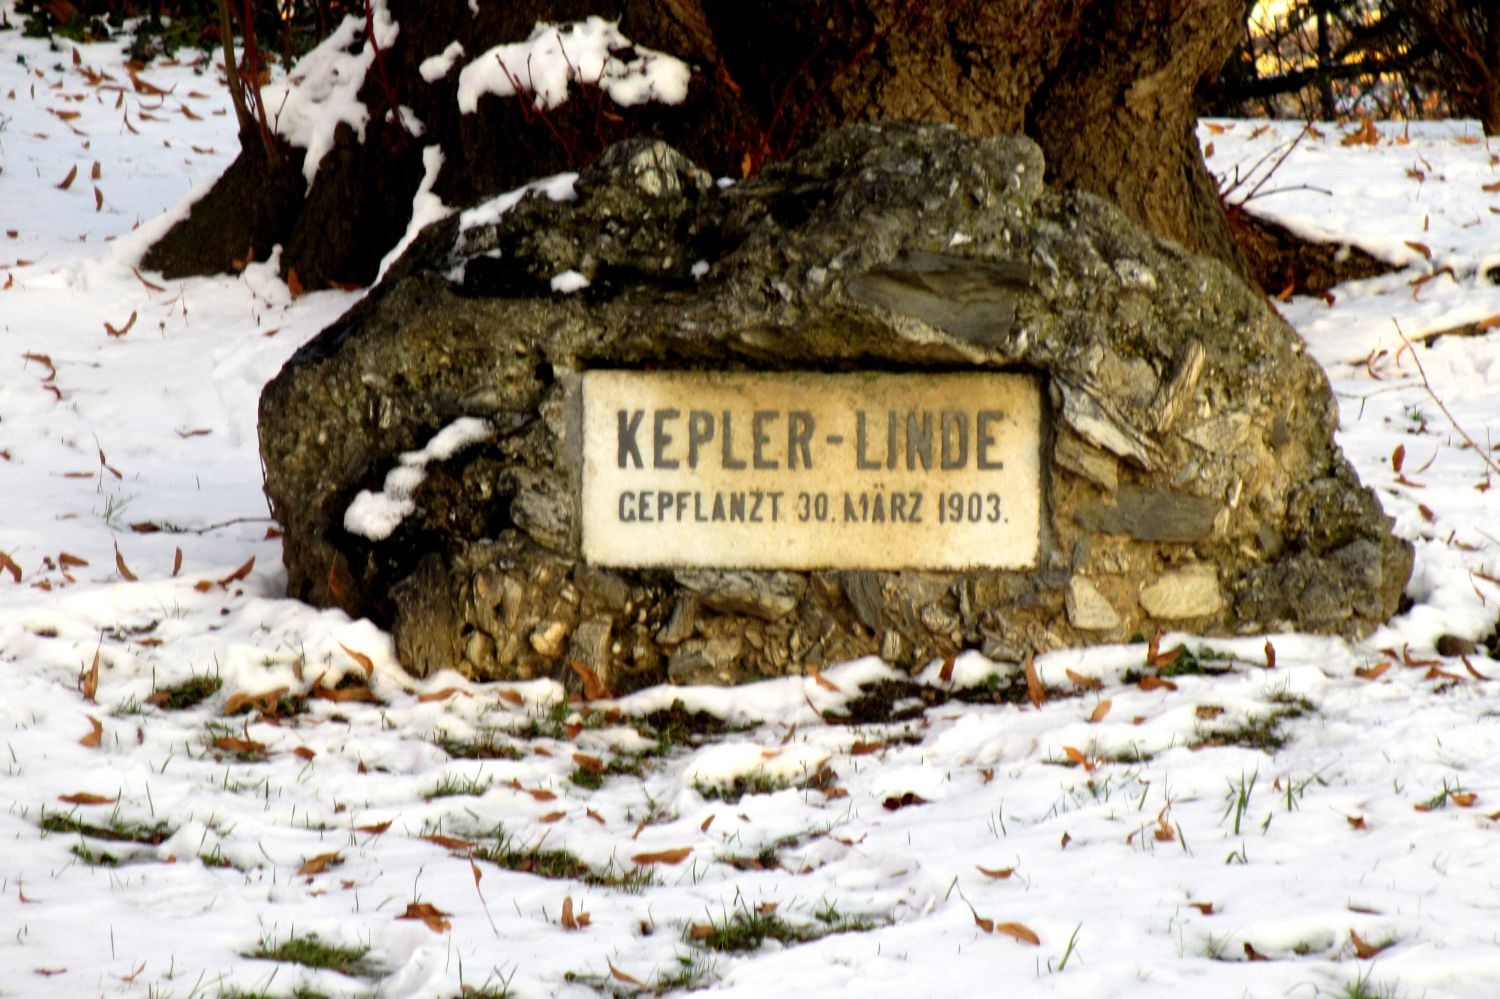 Kepler-Linde, Grazer Schloßberg